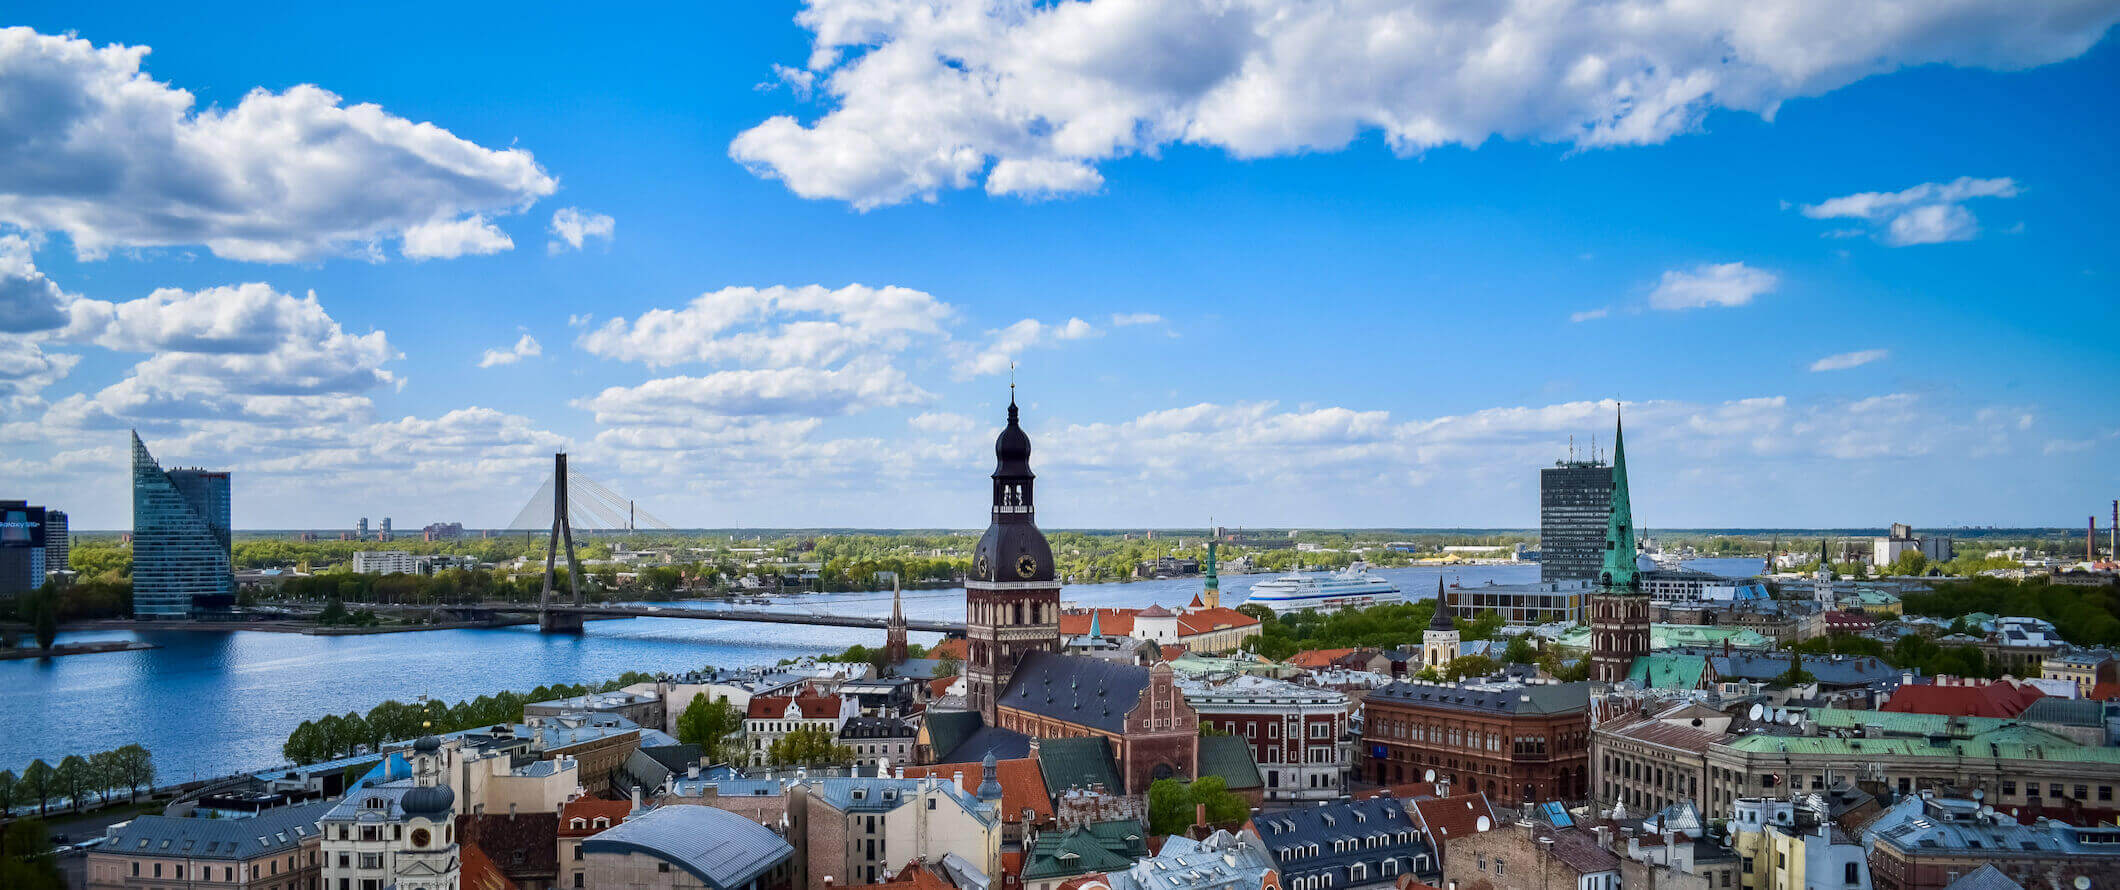 Dia ensolarado brilhante sobre o horizonte de Riga, a capital da Letônia